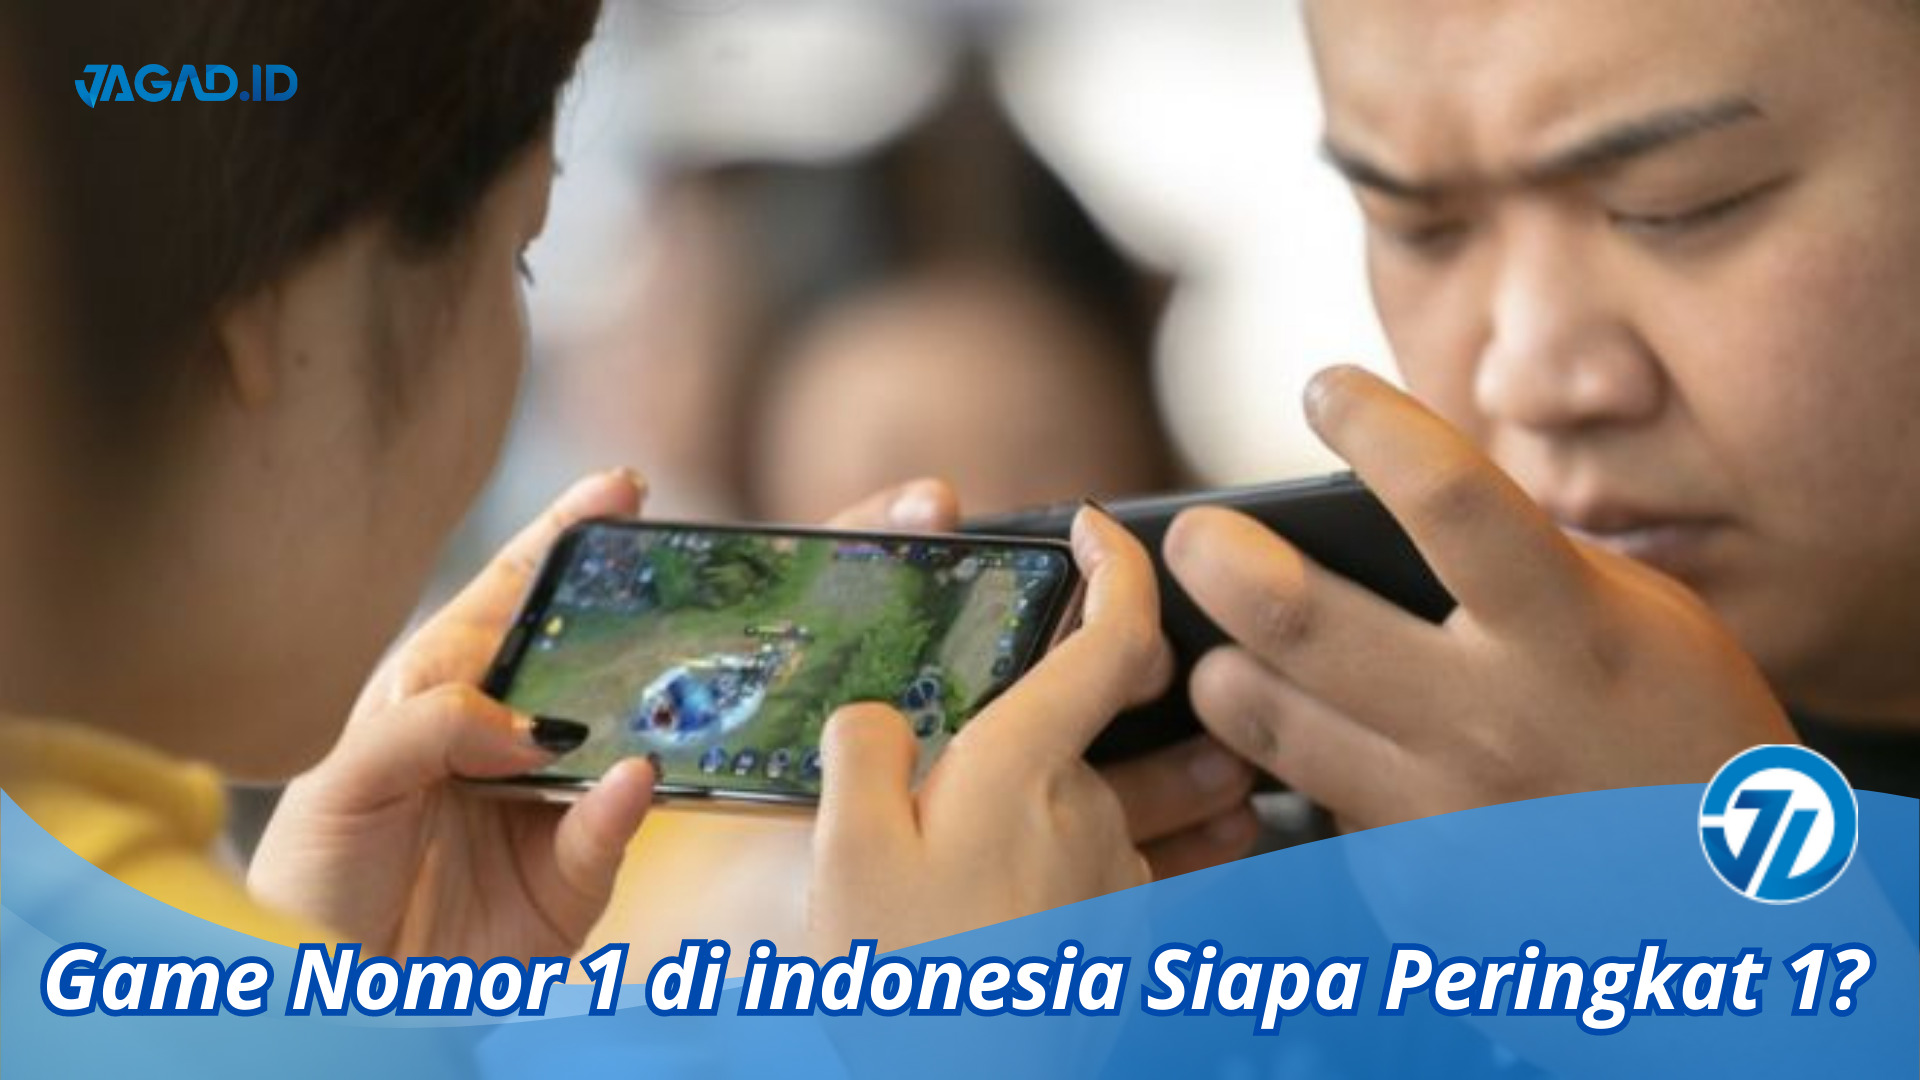 Game Nomor 1 di indonesia